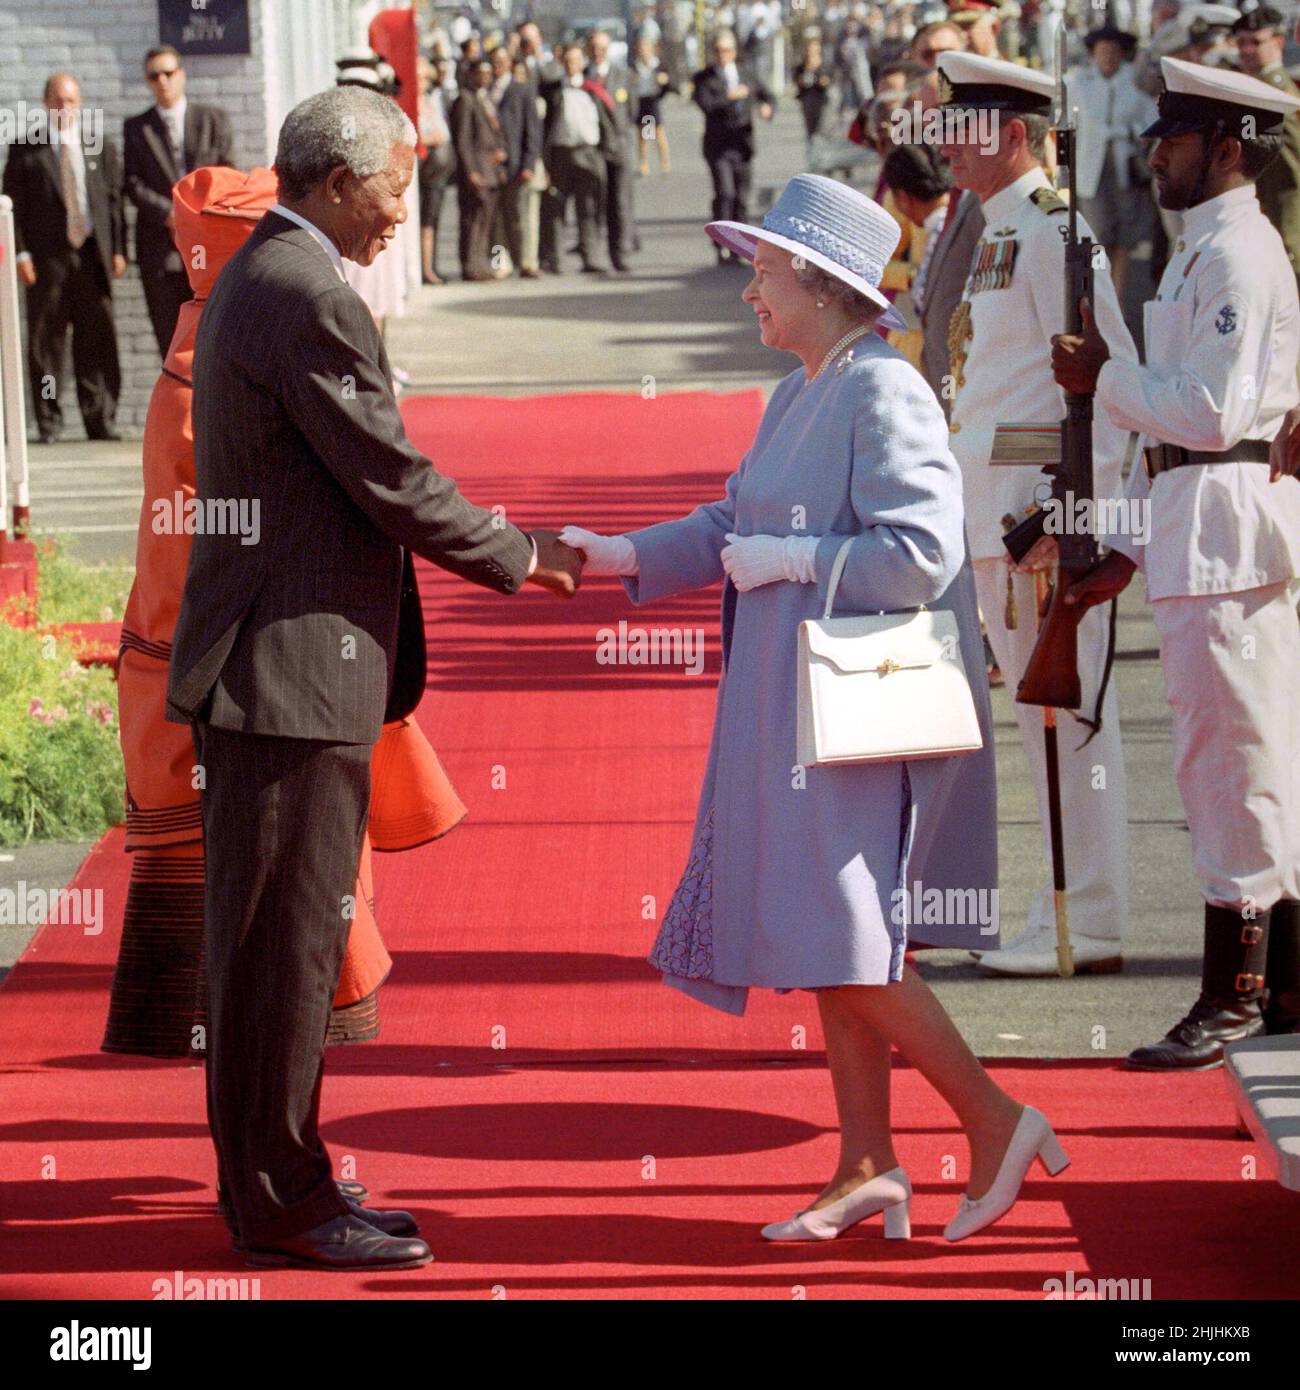 Foto del archivo fechada el 20/03/95, del Presidente de Sudáfrica Nelson Mandela saludando a la Reina Isabel II cuando se acerca del yate real Britannia en Ciudad del Cabo al comienzo oficial de su primera visita al país desde 1947. Fecha de emisión: Domingo 30 de enero de 2022. Foto de stock